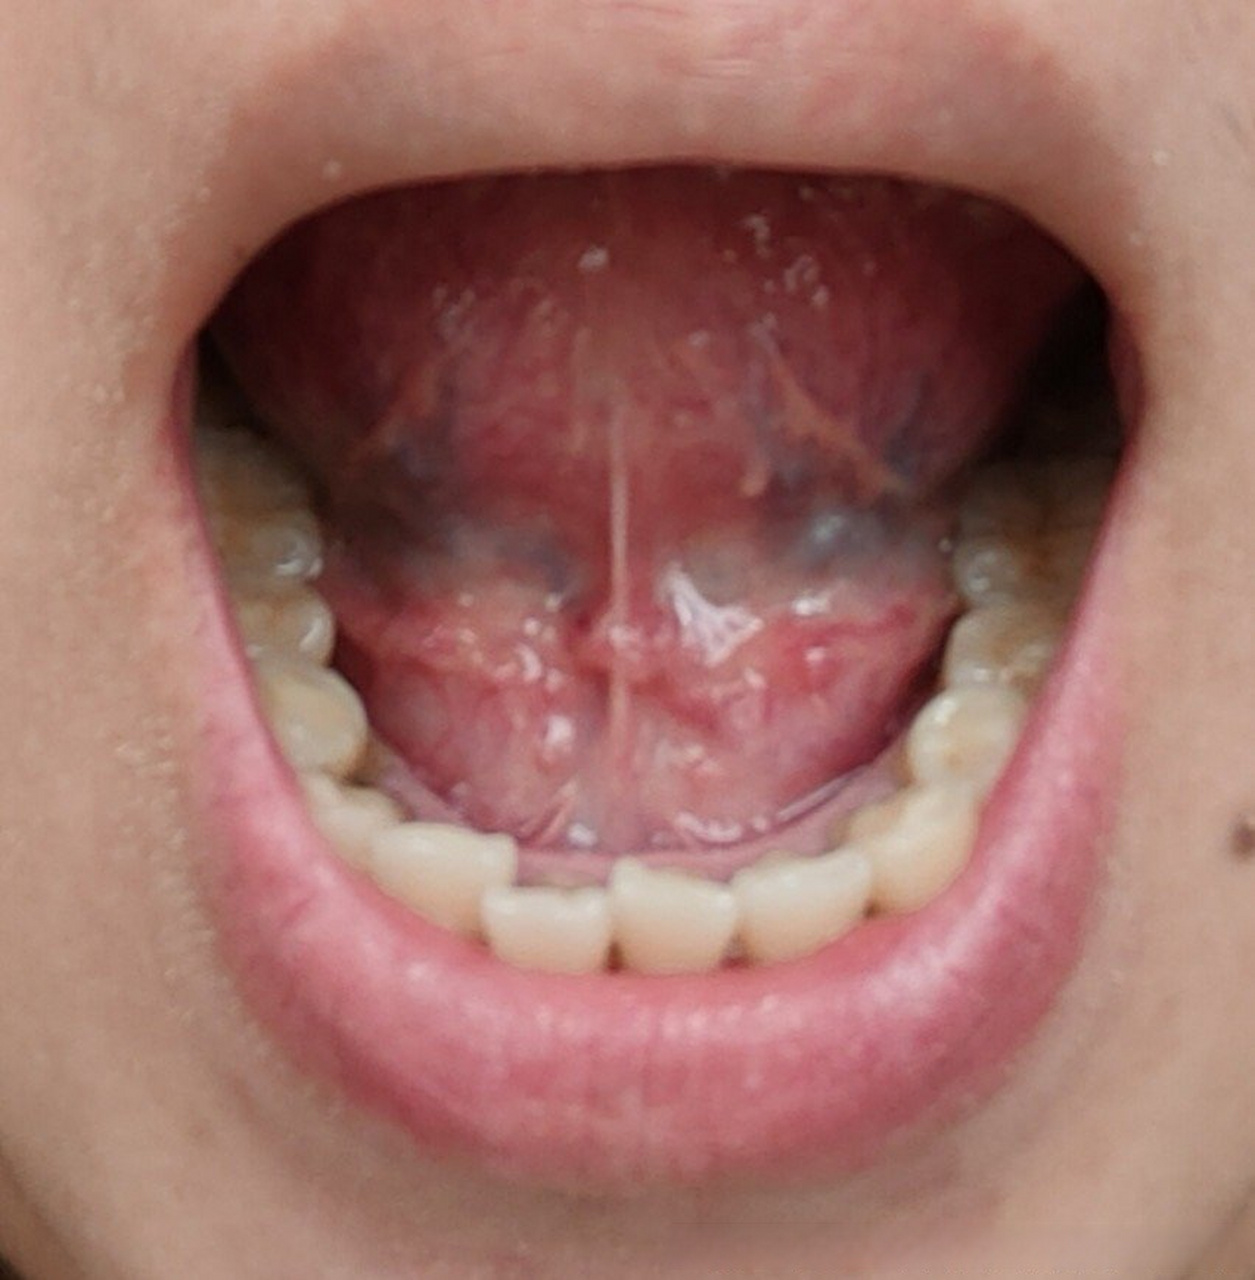 舌头系带两侧疙瘩图图片